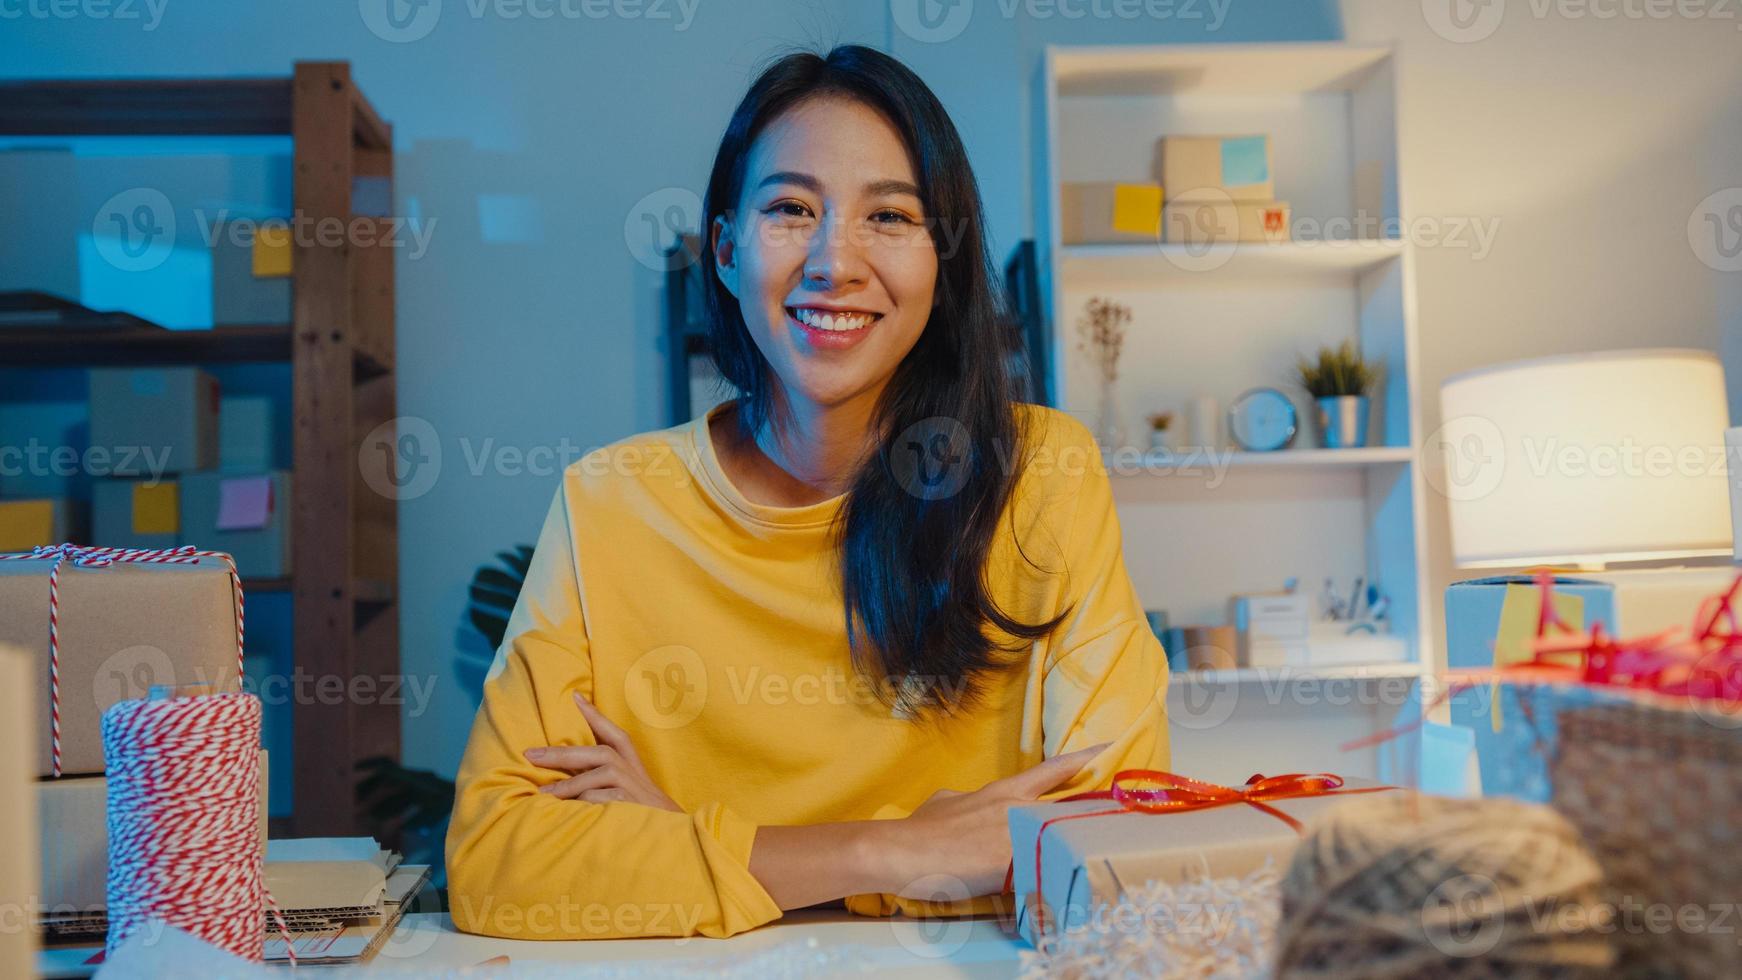 porträtt av den unga asiatiska affärskvinnan som känner sig lyckligt leende, korsade armar och tittar till kameran medan du arbetar i hemmakontoret på natten. småföretagare, online marknadsföringskoncept. foto